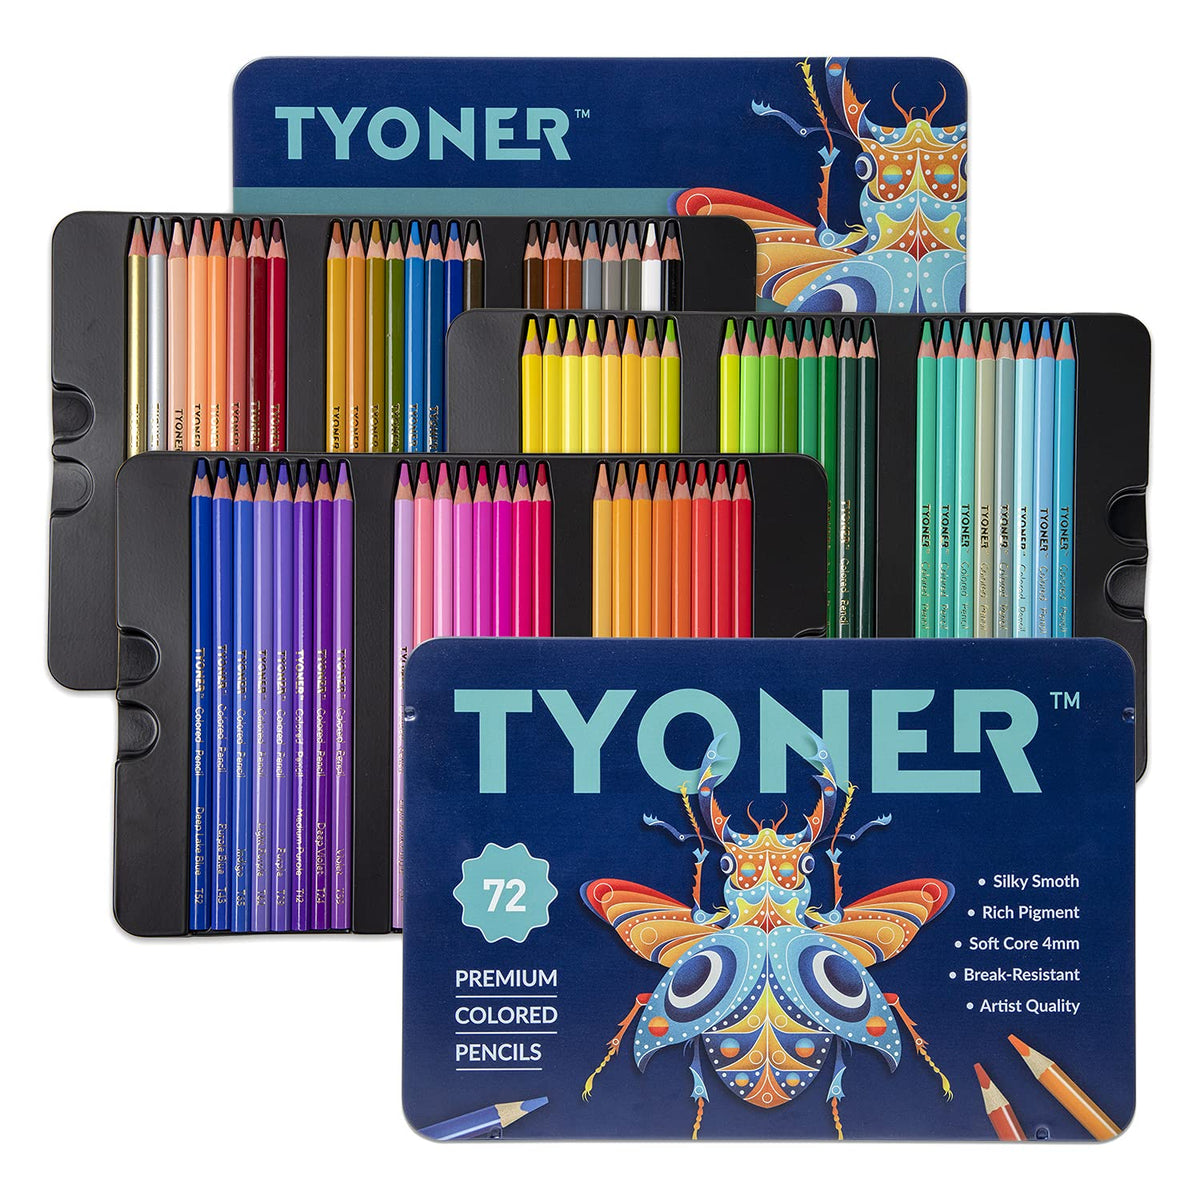 174 Colors Professional Colored Pencils Set, Shuttle Art Soft Core